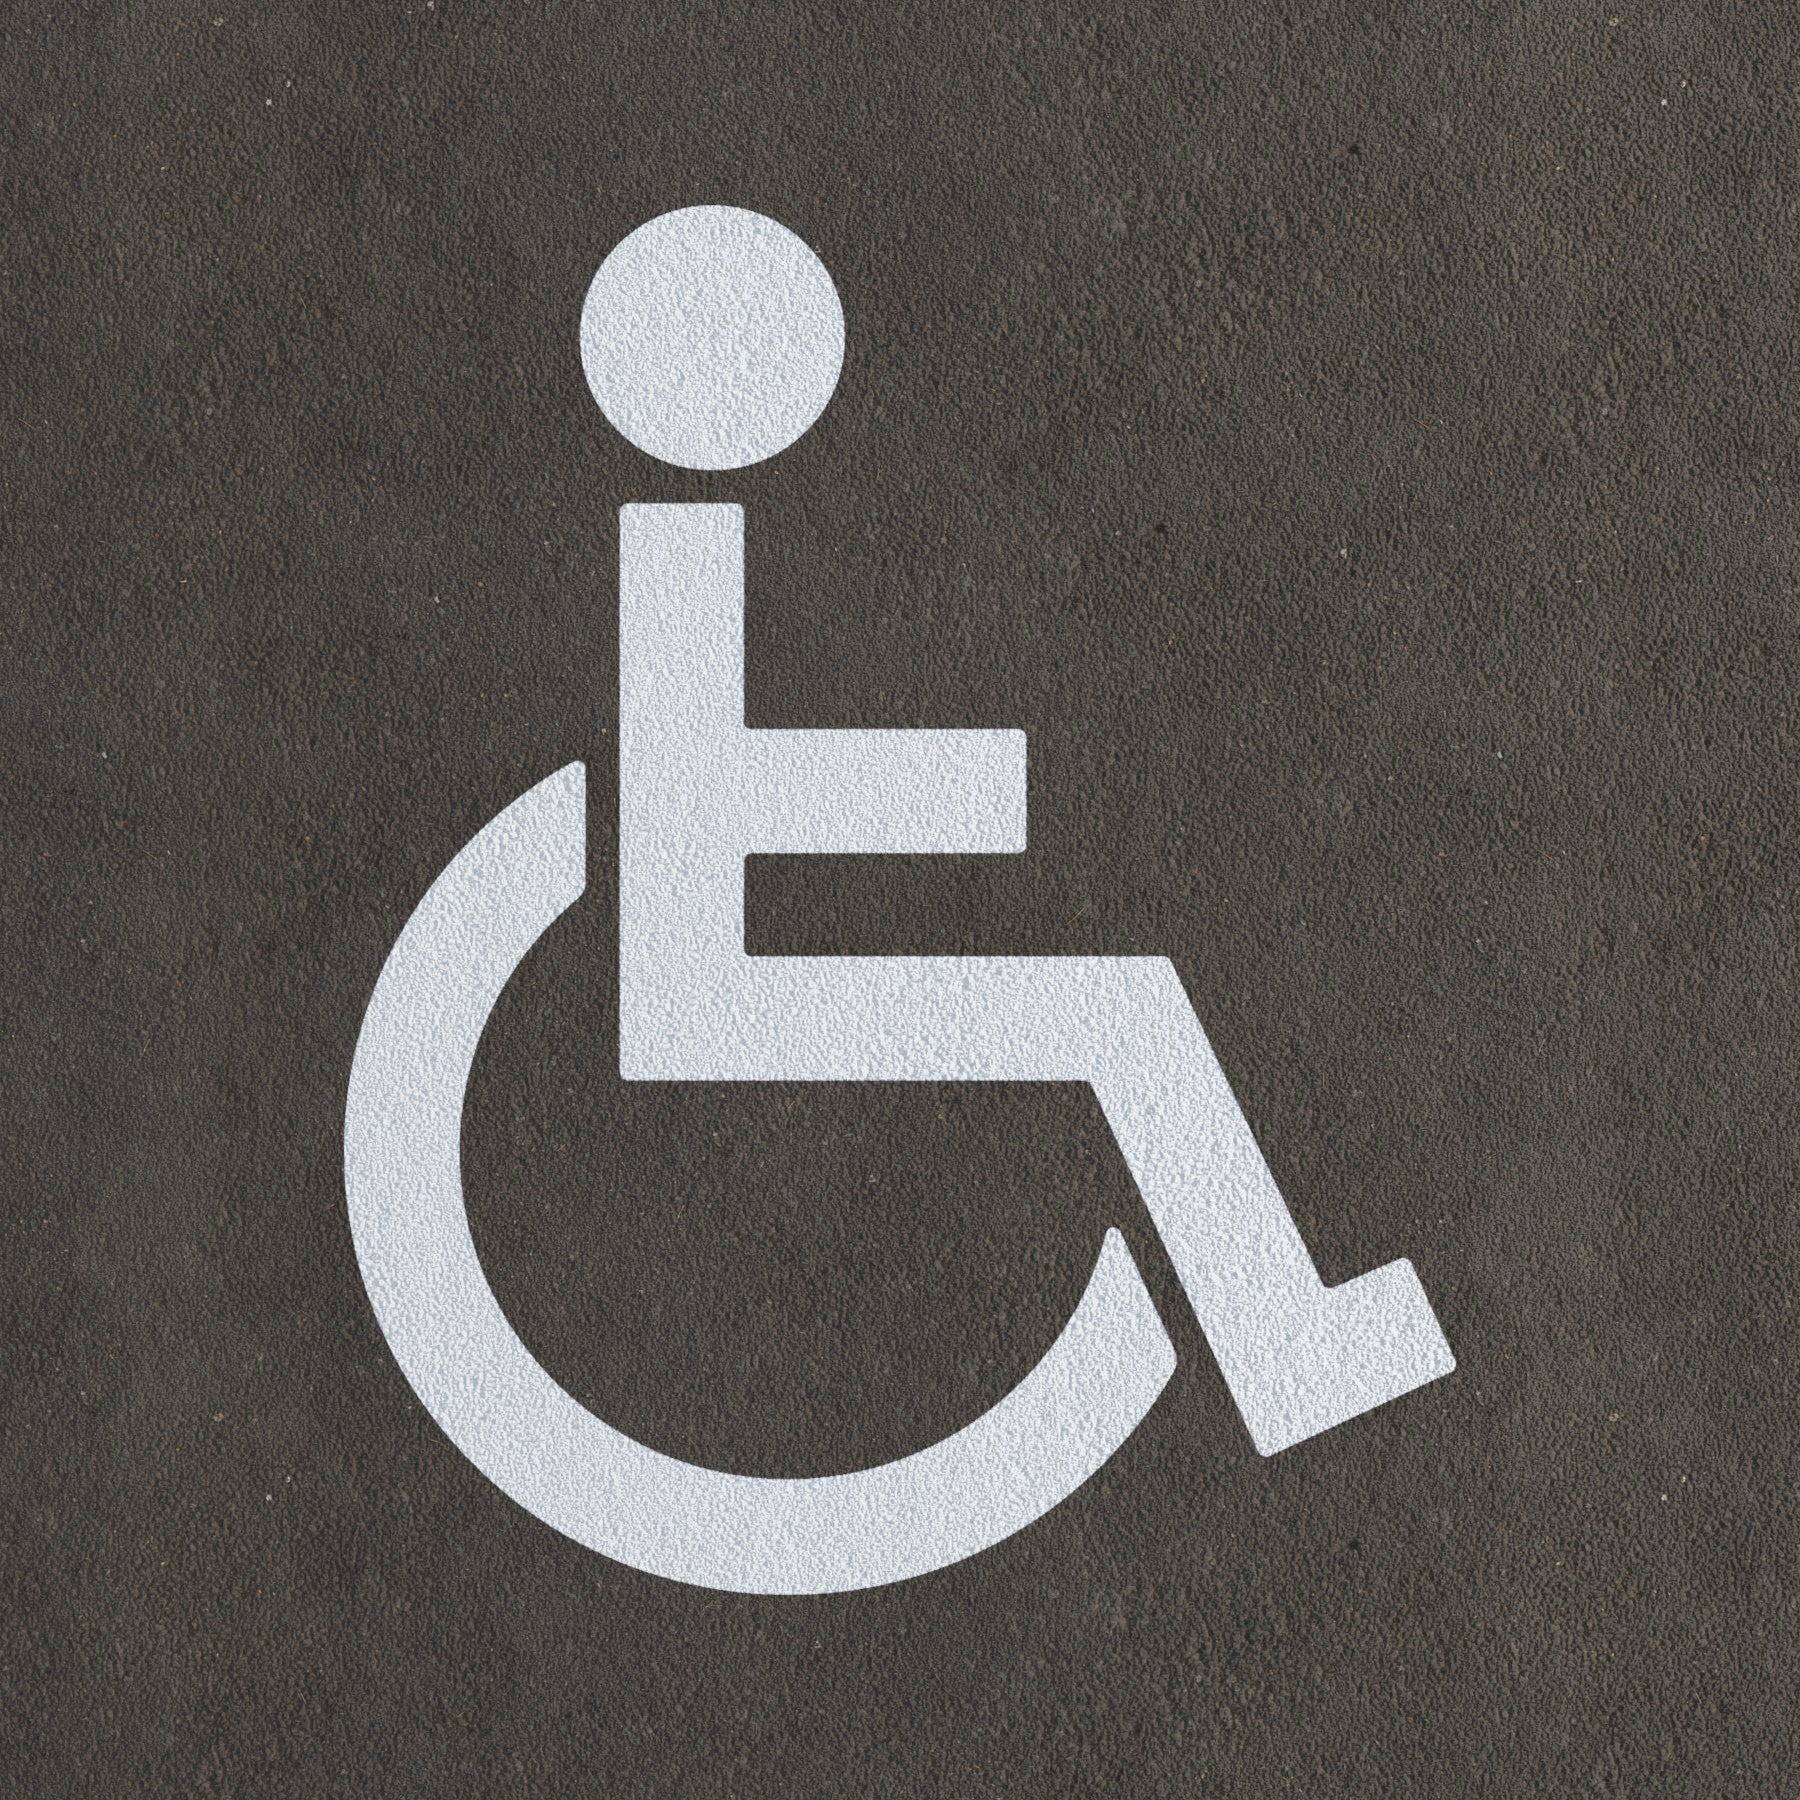 CraftStar Wheelchair Icon Stencil Painted on Floor